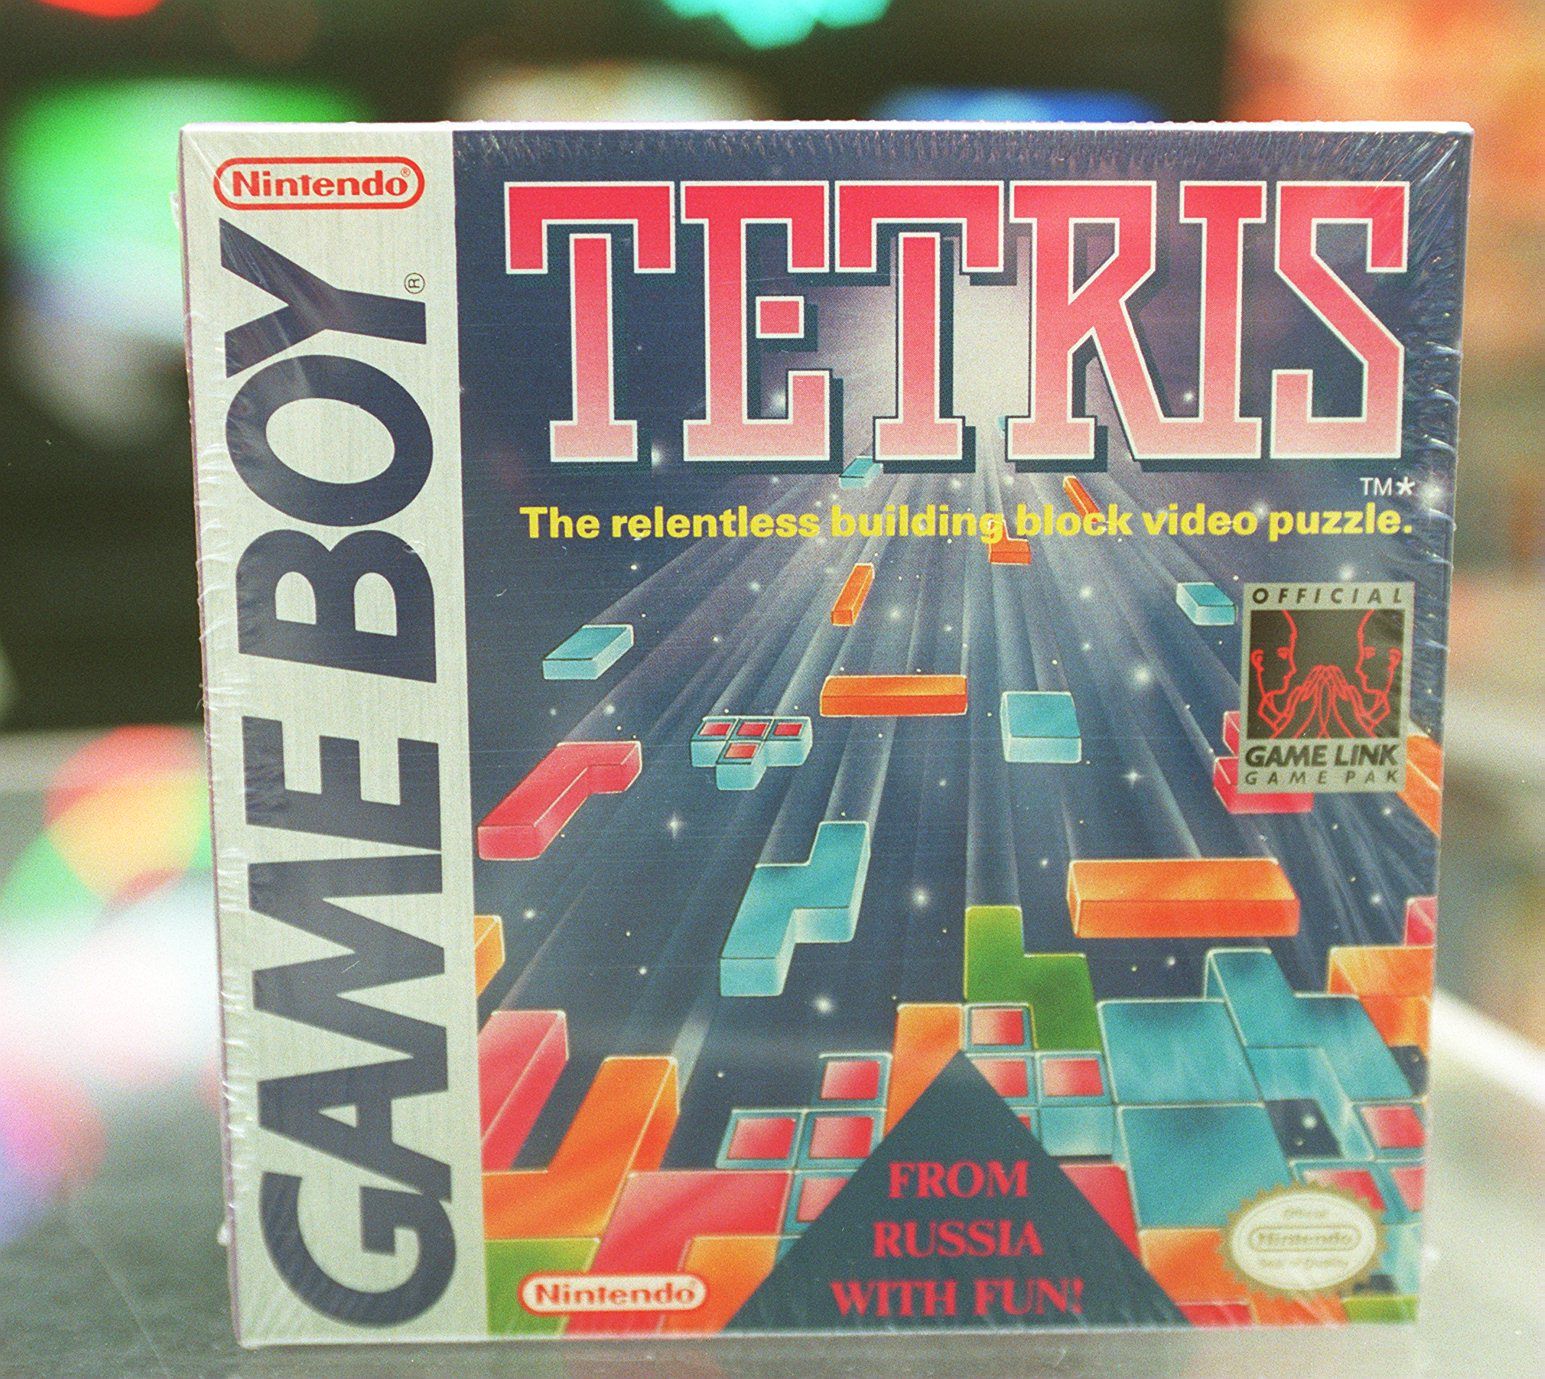 Tetris for the original Nintendo Game Boy